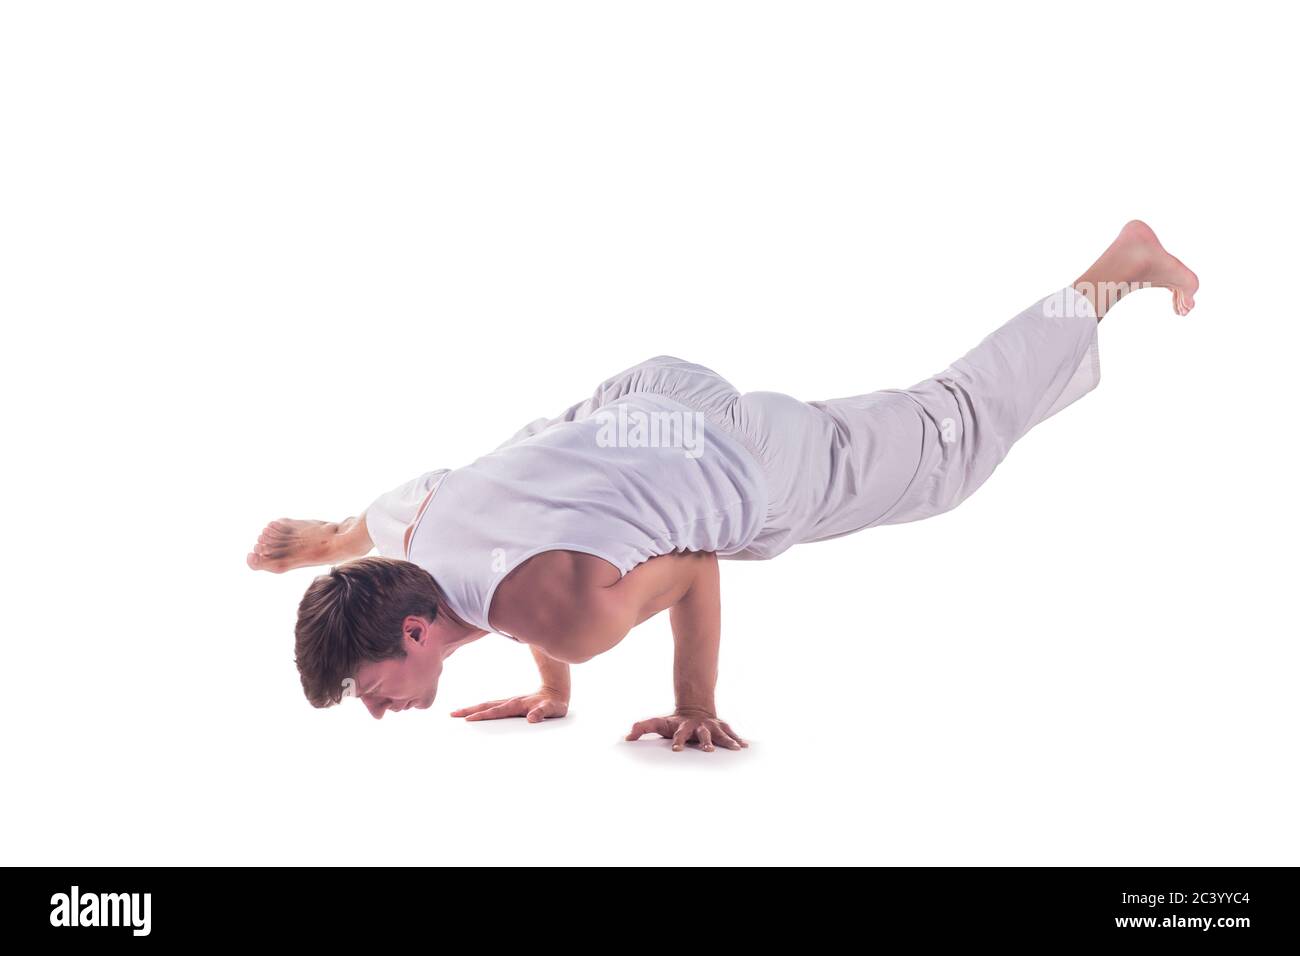 Yoga Crow Pose là tư thế khá thách thức, nhưng giúp cơ thể bạn mạnh mẽ và linh hoạt hơn. Hãy xem những hình ảnh chân thực về Yoga Crow Pose và học cách thực hiện tư thế này một cách dễ dàng và đúng kỹ thuật nhất.